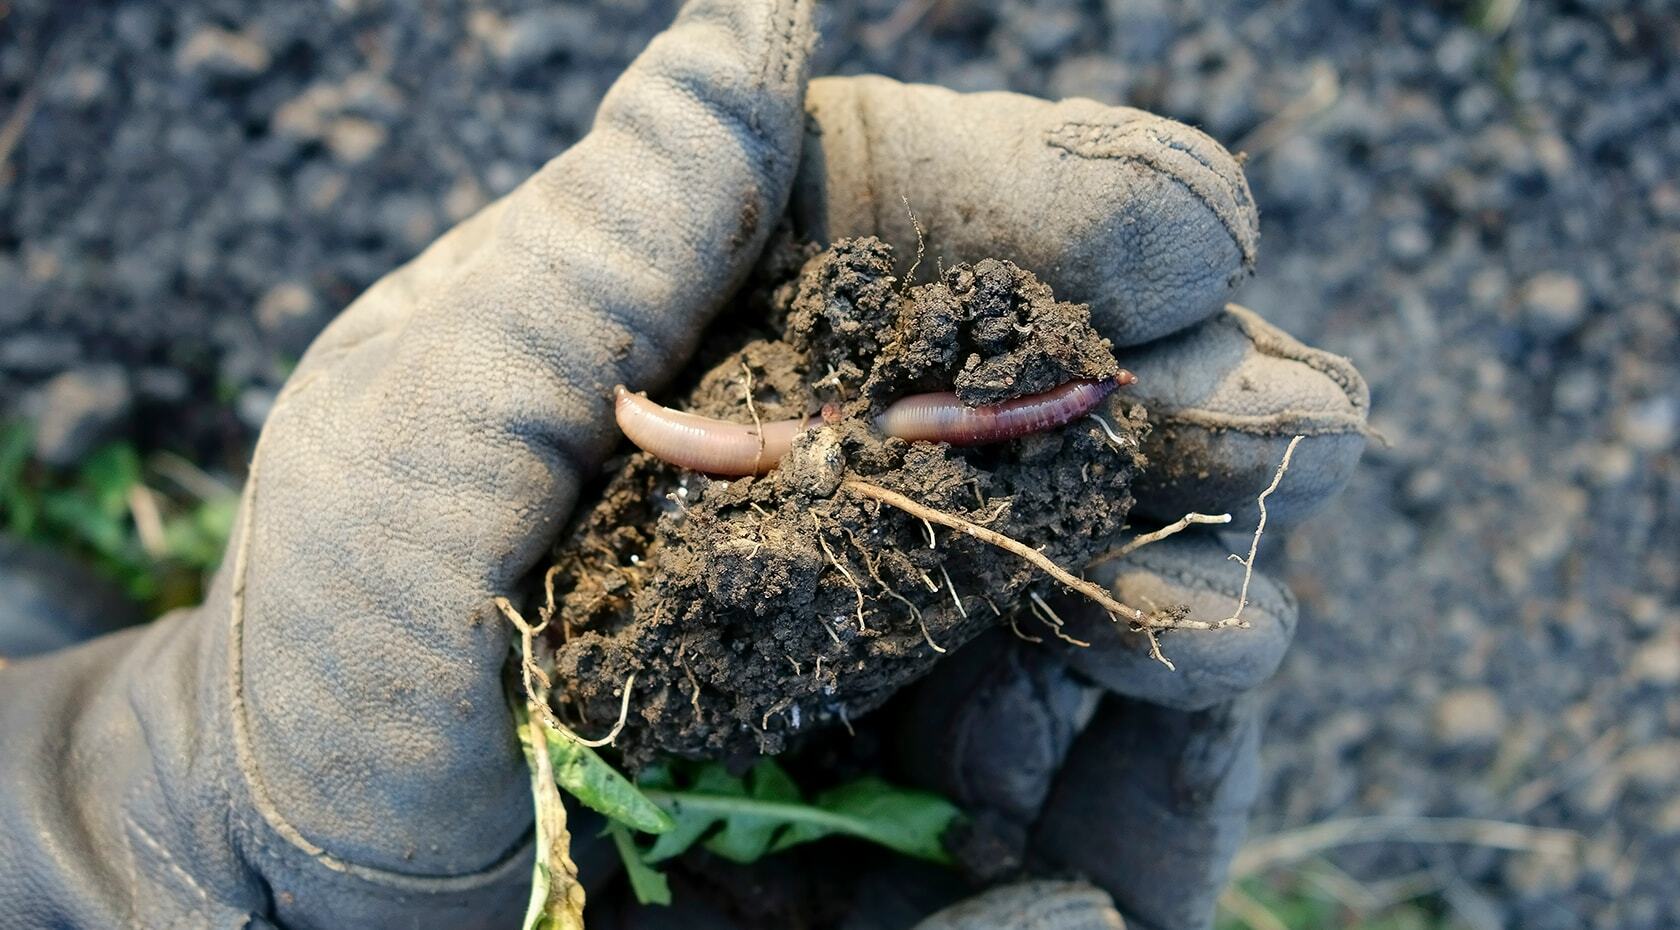 Würmer zum Zerkleinern organischen Materials für einen nährstoffreicheren Boden einsetzen.